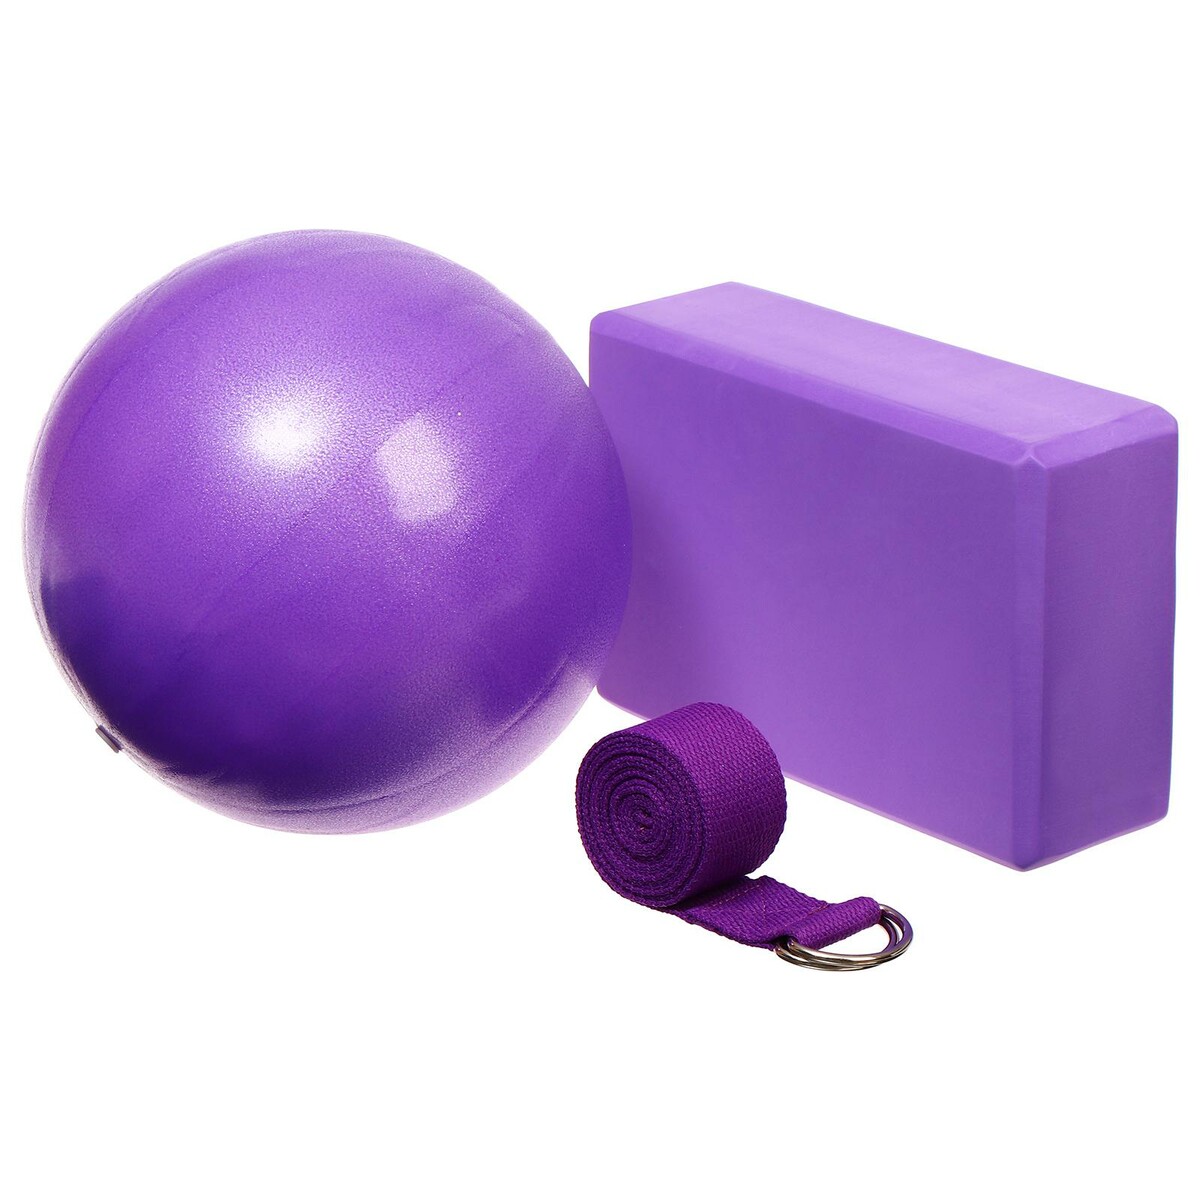 фото Набор для йоги sangh: блок, ремень, мяч, цвет фиолетовый